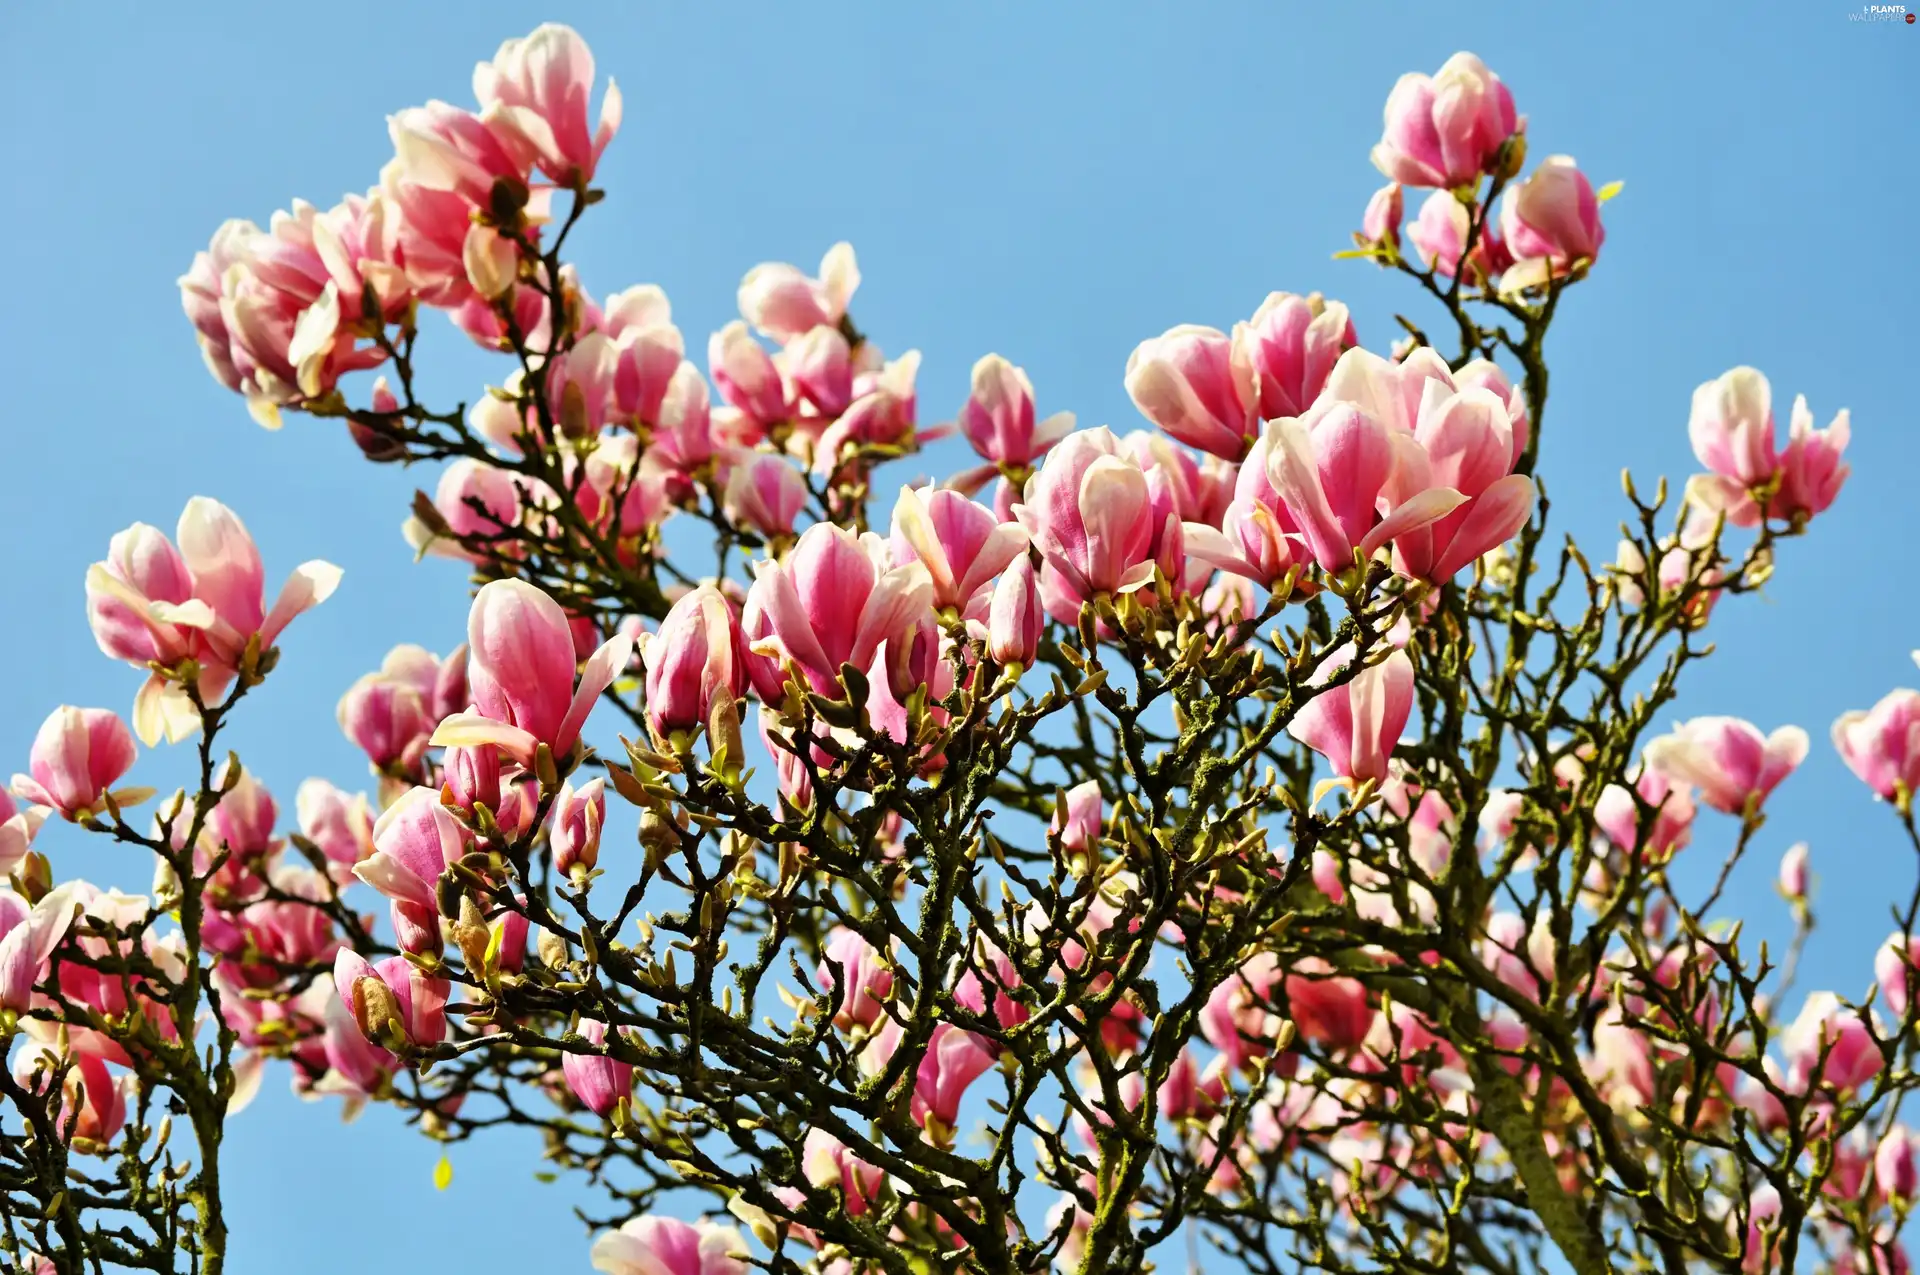 Flowers, Magnolias, trees